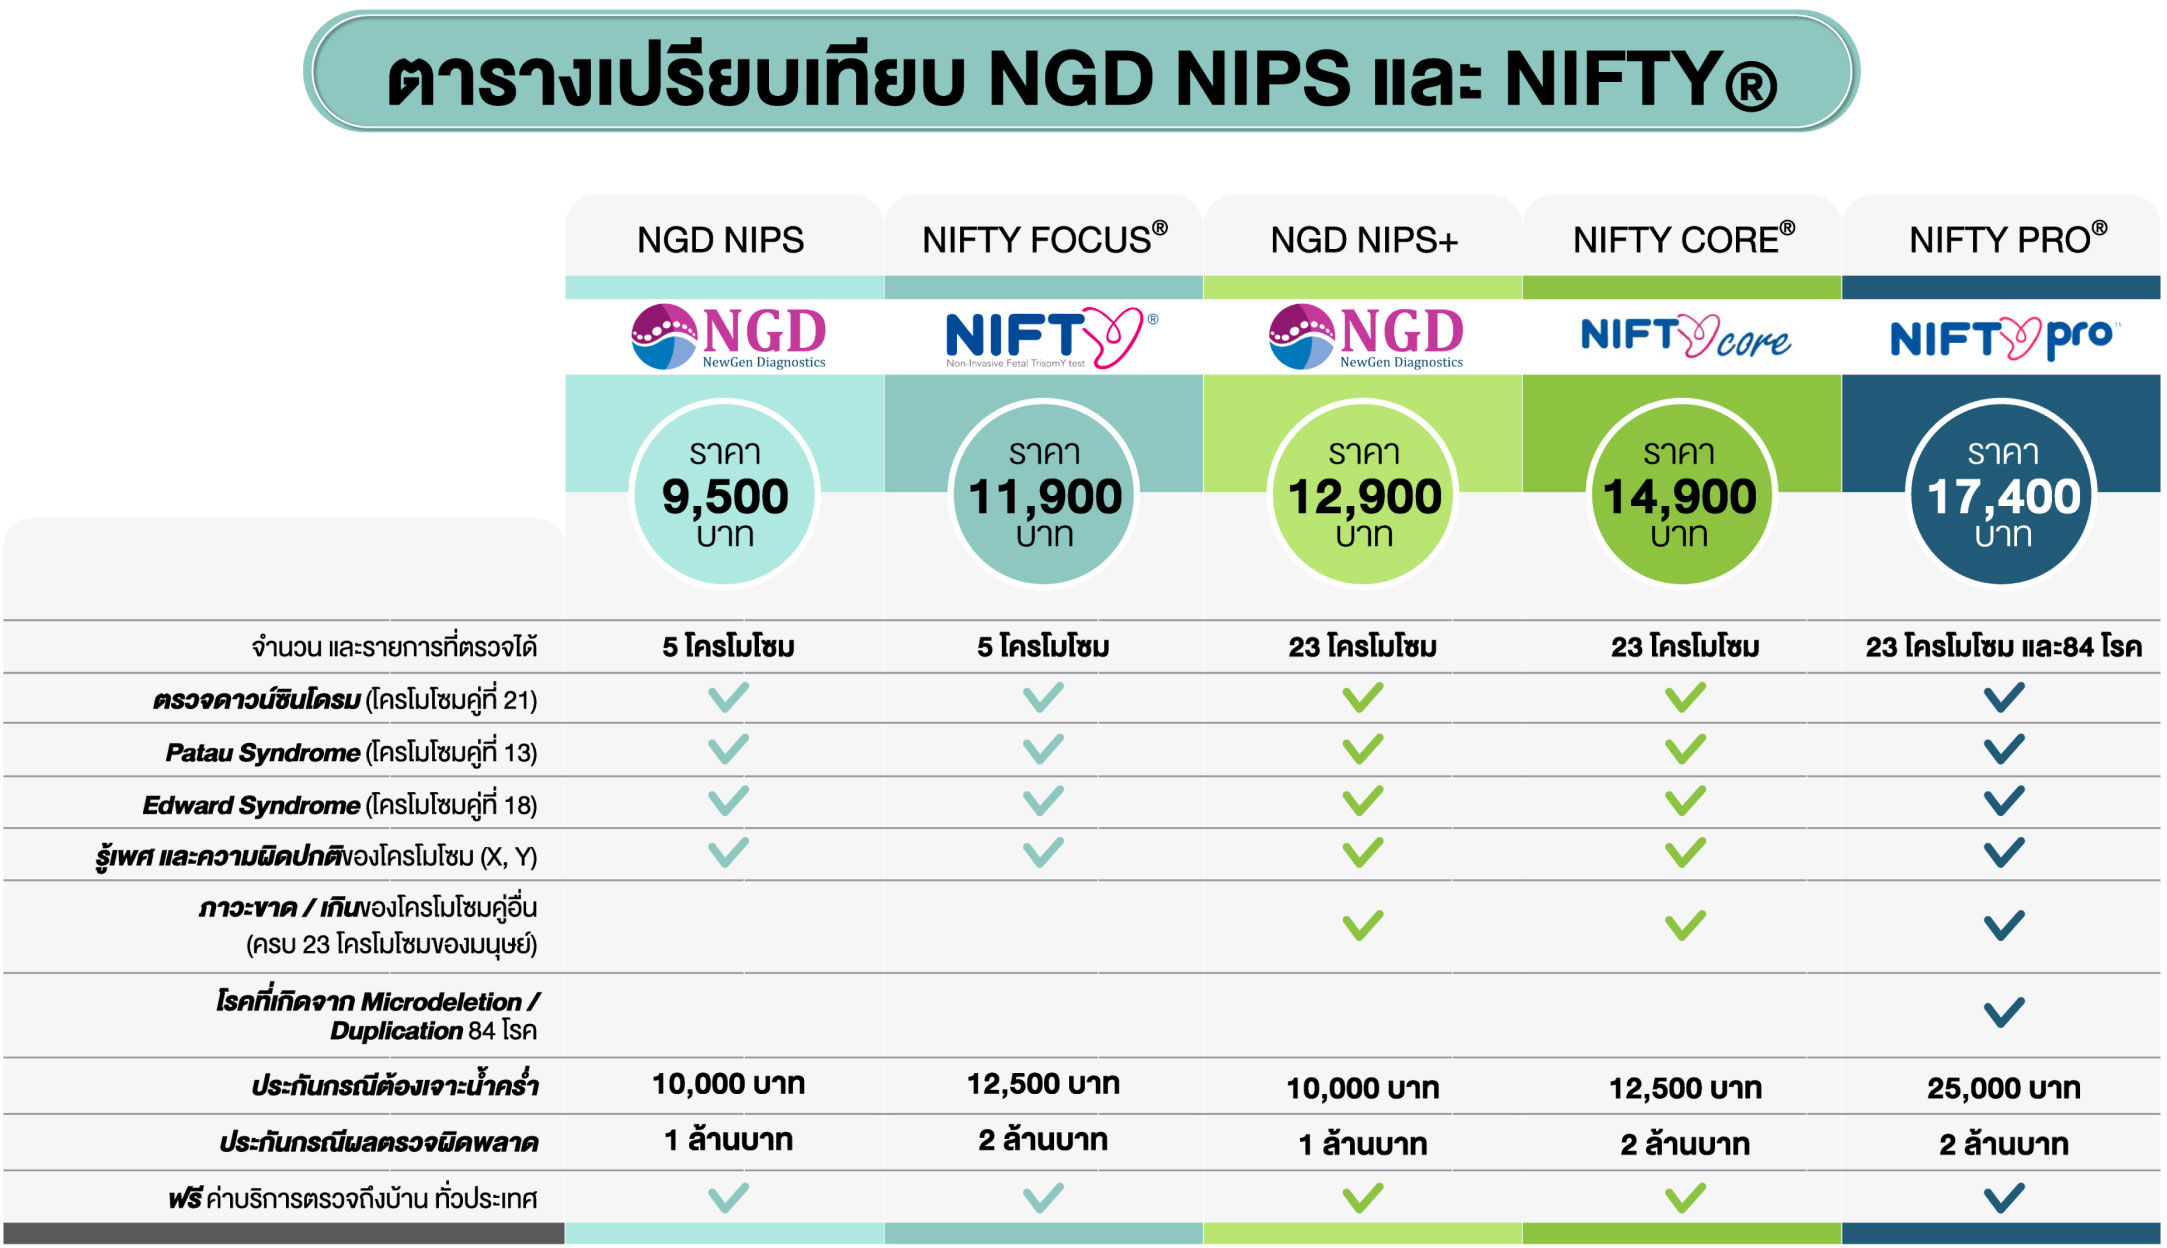 ตารางเปรียบเทียบ NGD NIPS และ NIFTY